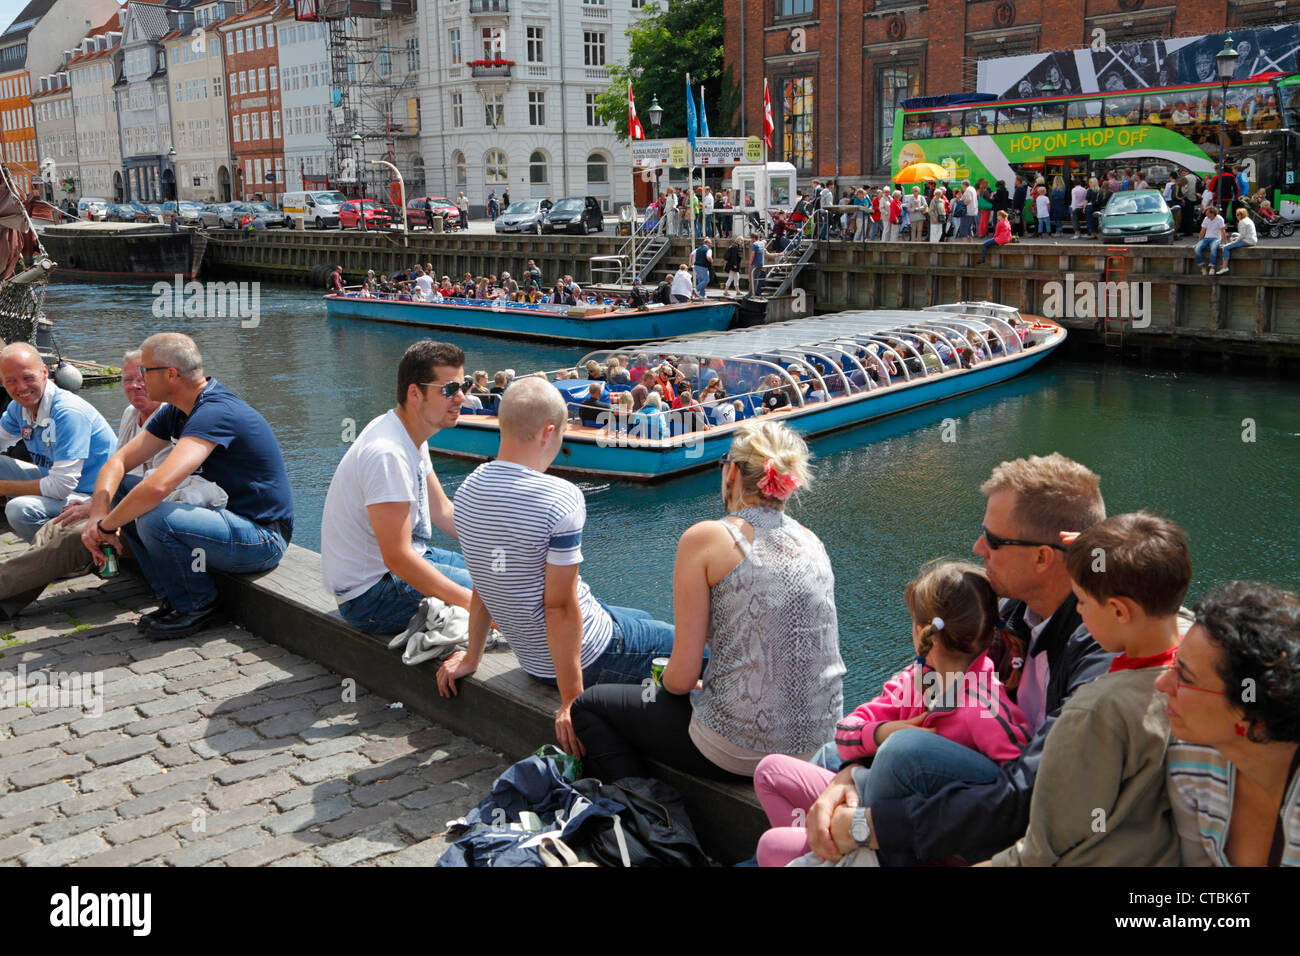 Nyhavn überfüllt mit Touristen und Jazz Fans an einem sonnigen Sommertag während des Copenhagen Jazz Festival. Kopenhagen, Dänemark. Dänische hygge. Dem städtischen Raum. Stockfoto